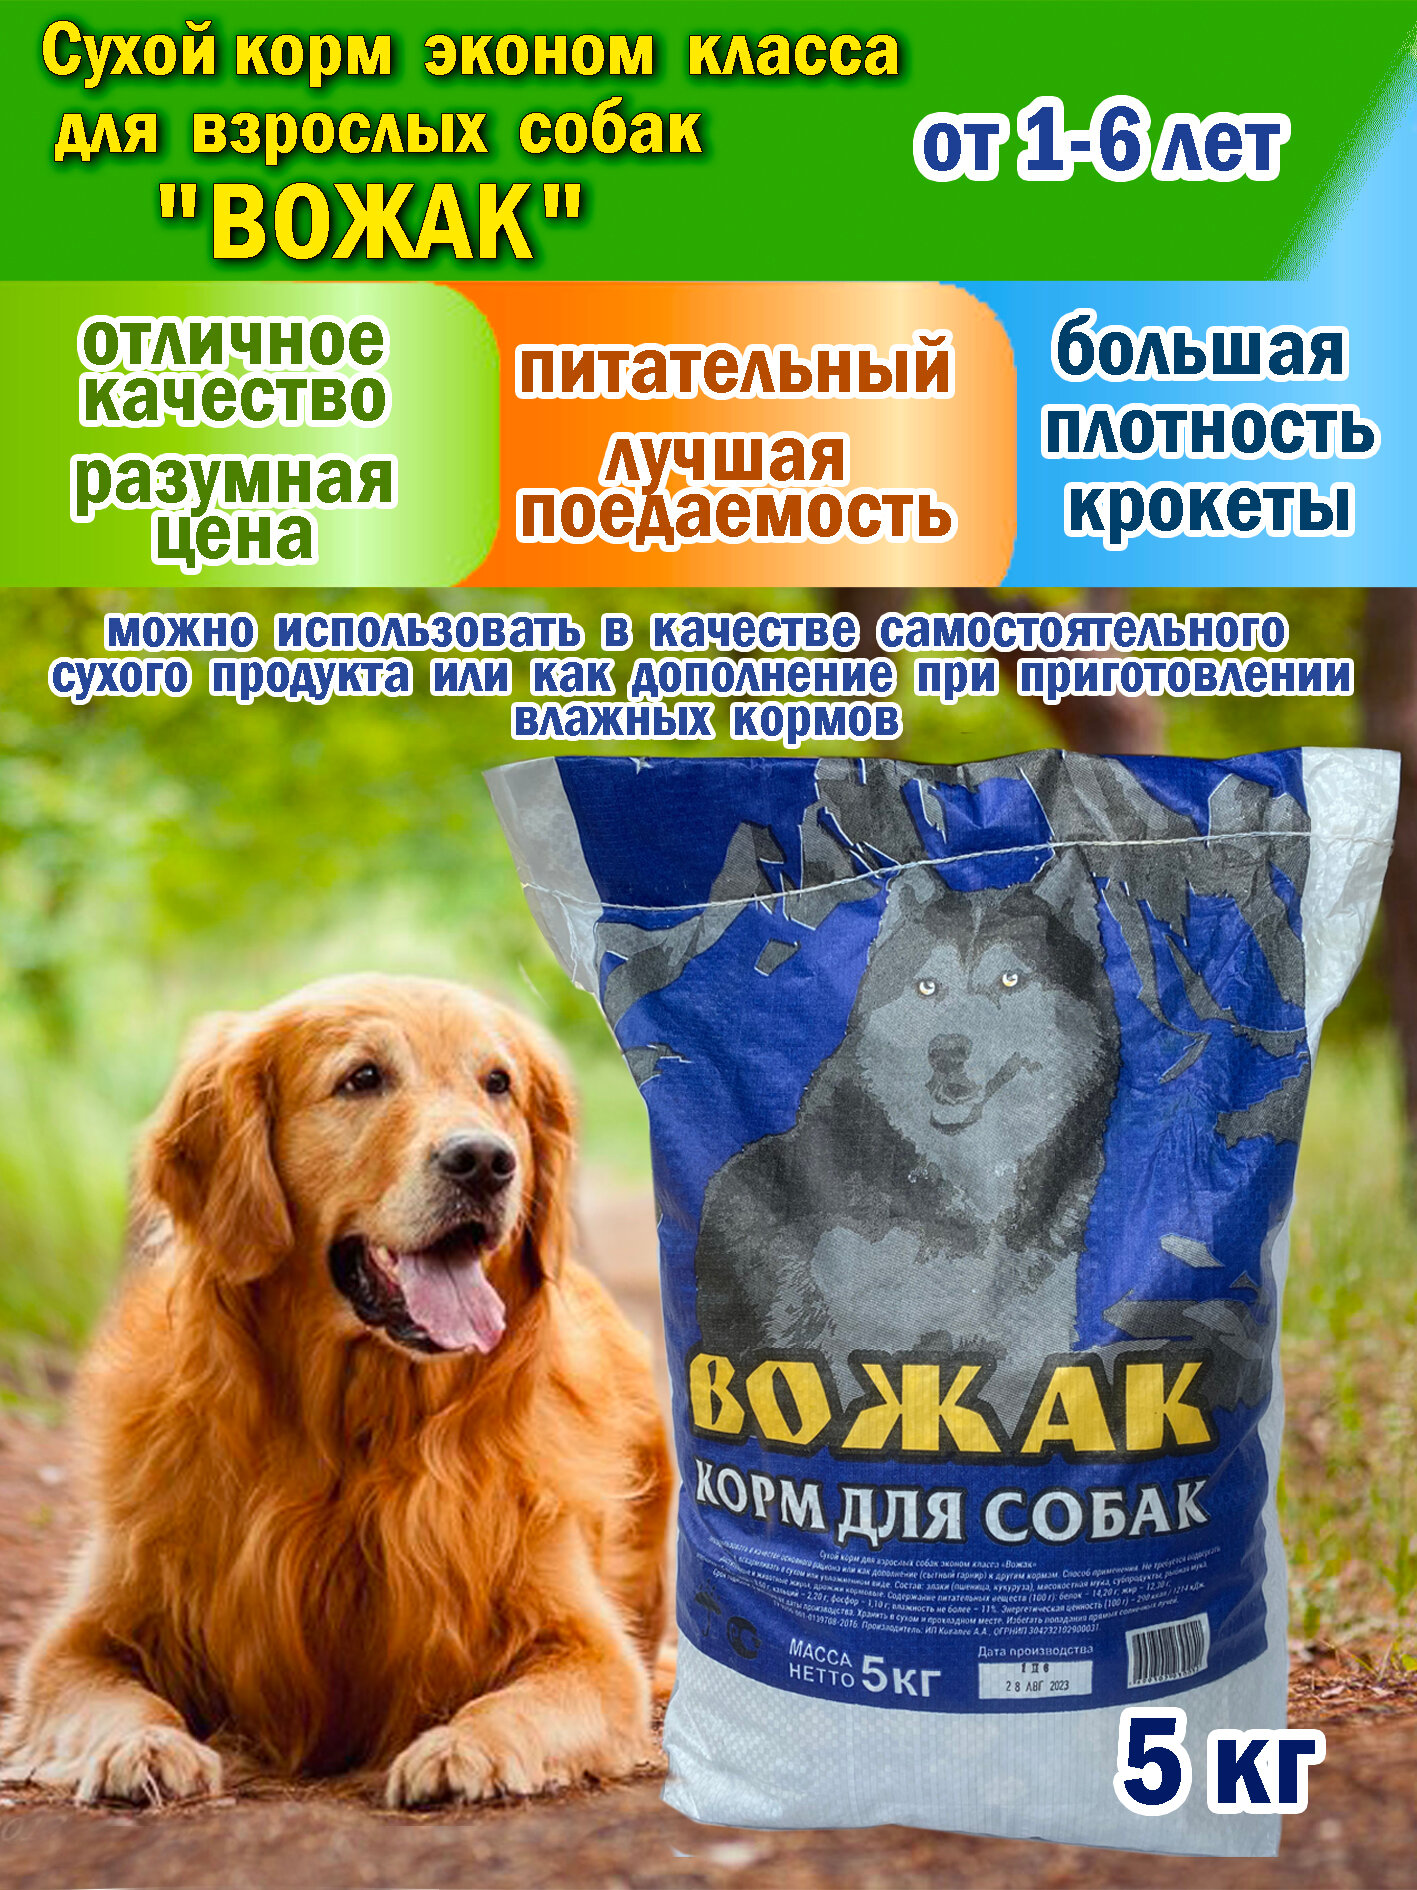 Сухой качественный корм для собак "вожак" мешок 5 кг.